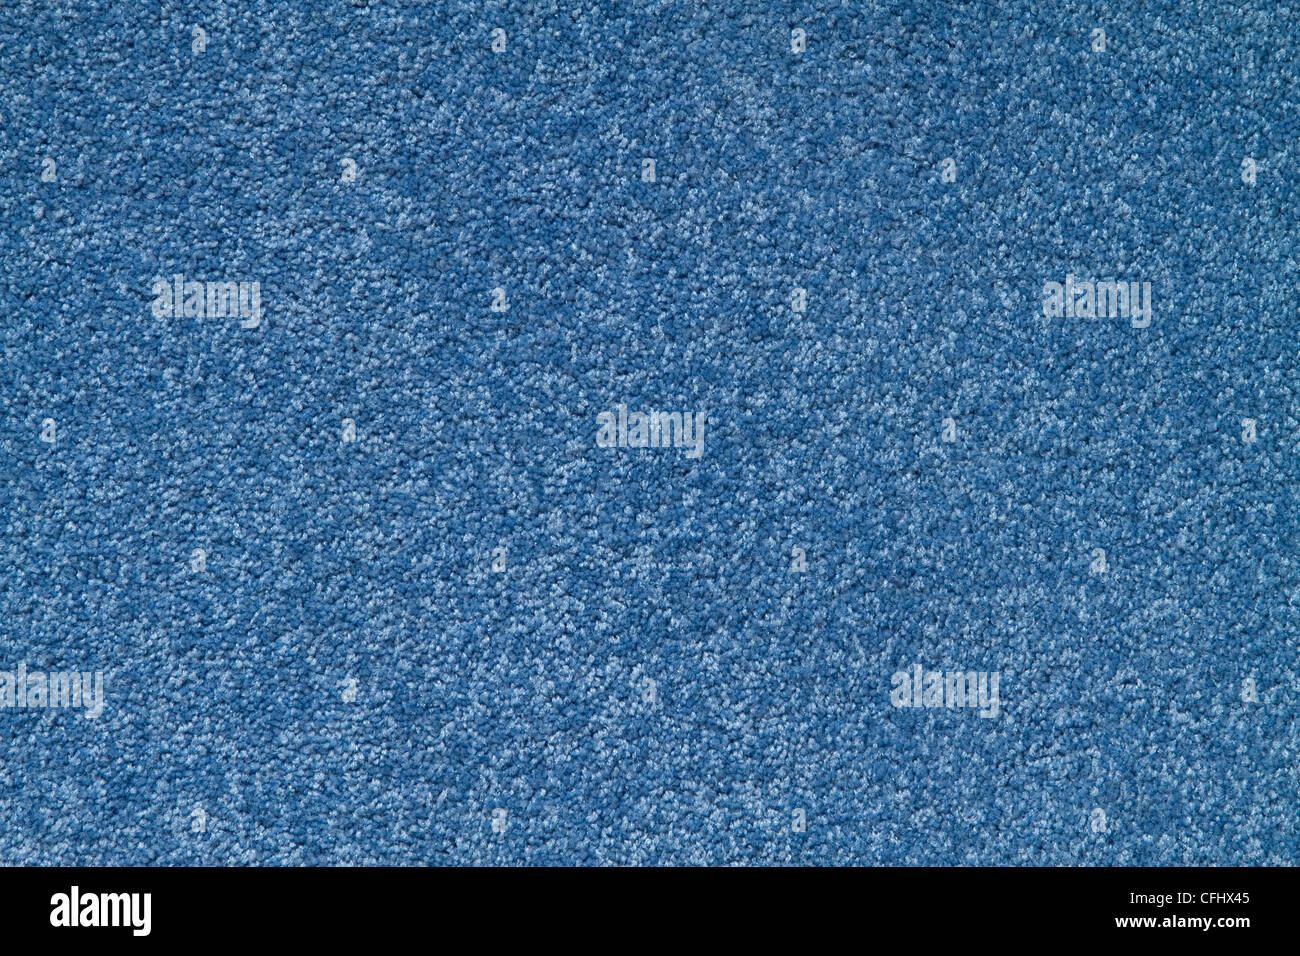 La textura de una alfombra de color azul con poca pila. Foto de stock